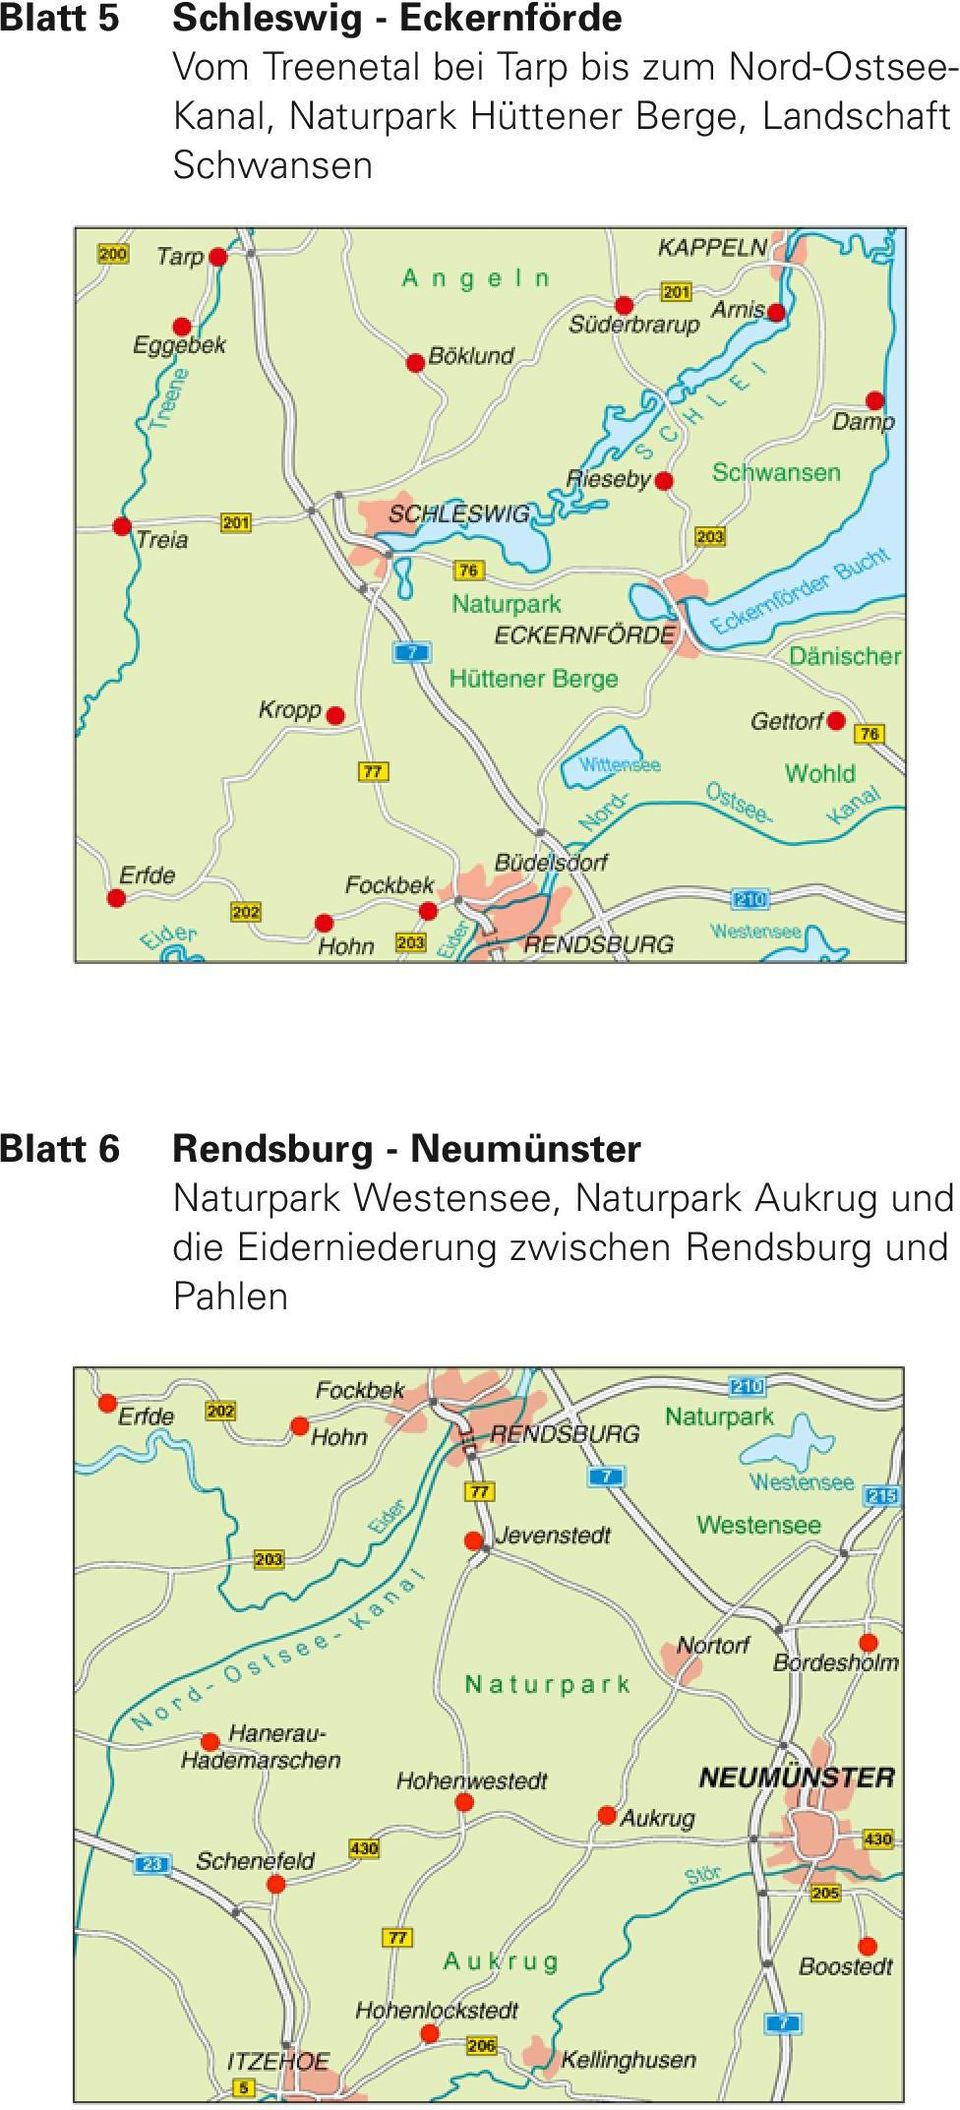 Schwansen Blatt 6 Rendsburg - Neumünster Naturpark Westensee,